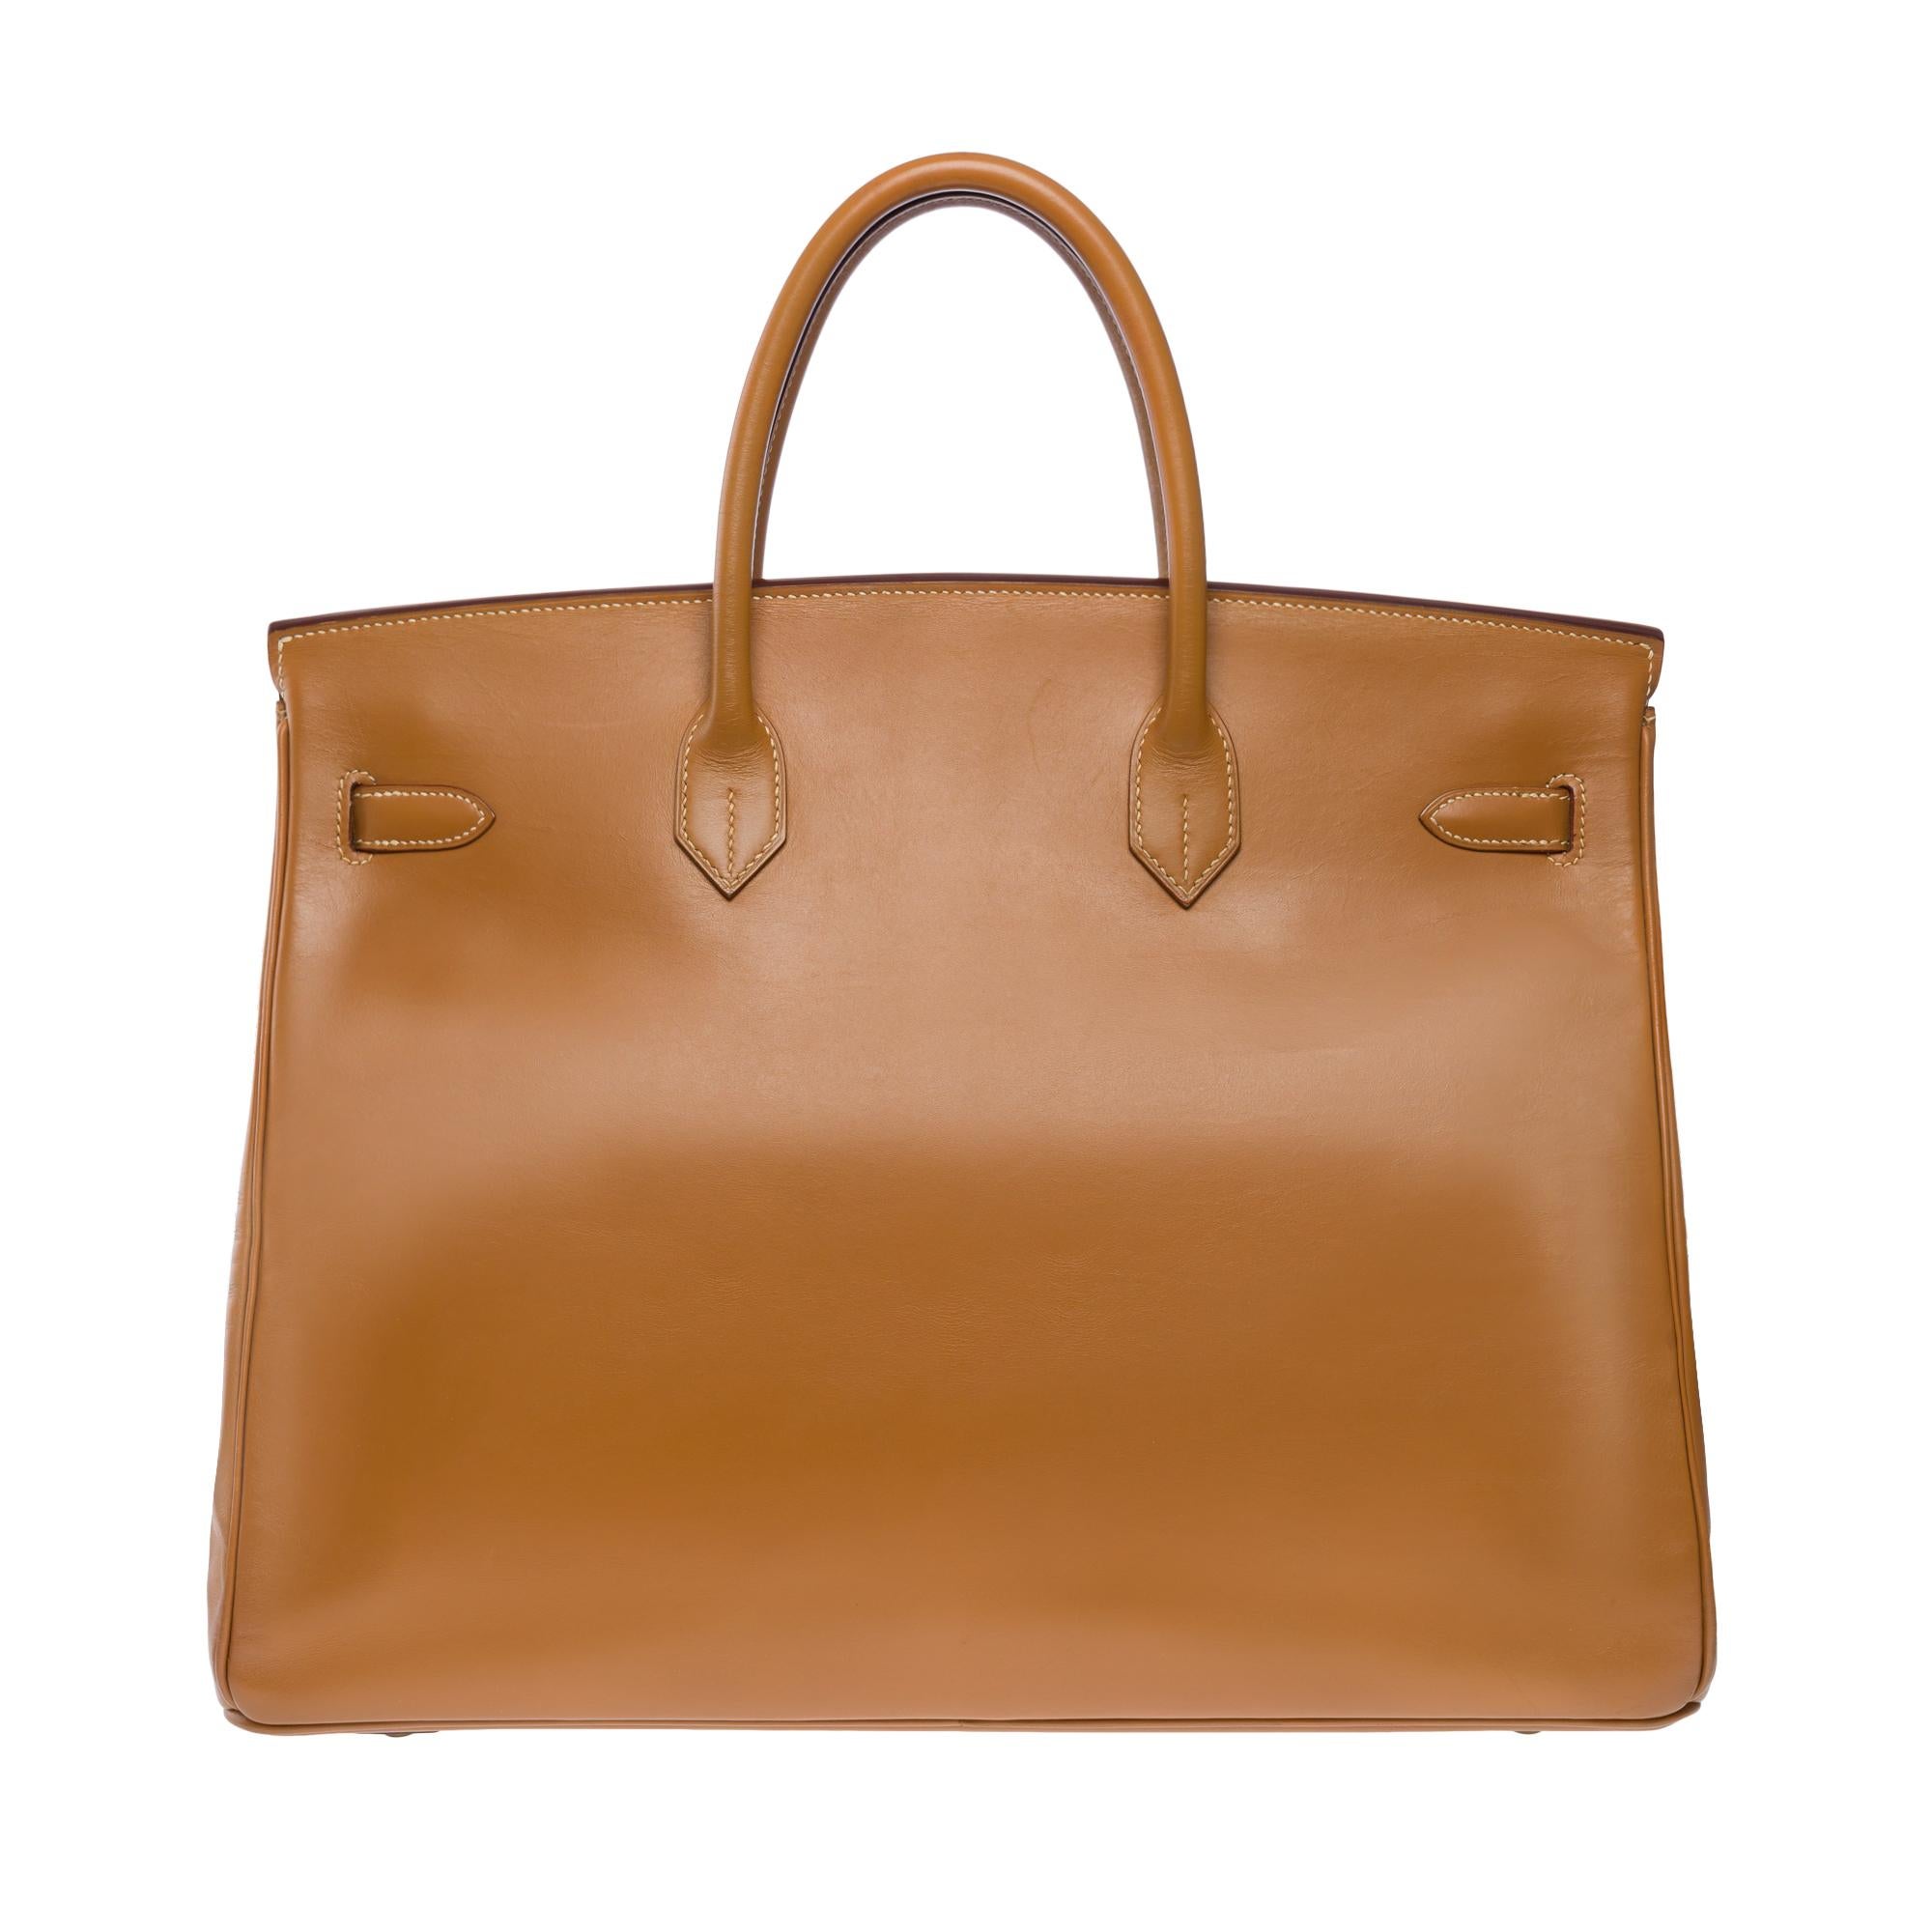 Magnifique sac à main Hermès Birkin 40 en cuir de Chamonix (or), quincaillerie en métal doré, double anse en cuir de camel pour un portage à la main.

Fermeture à rabat
Doublure intérieure en cuir doré, une poche zippée, une poche plaquée
Signature